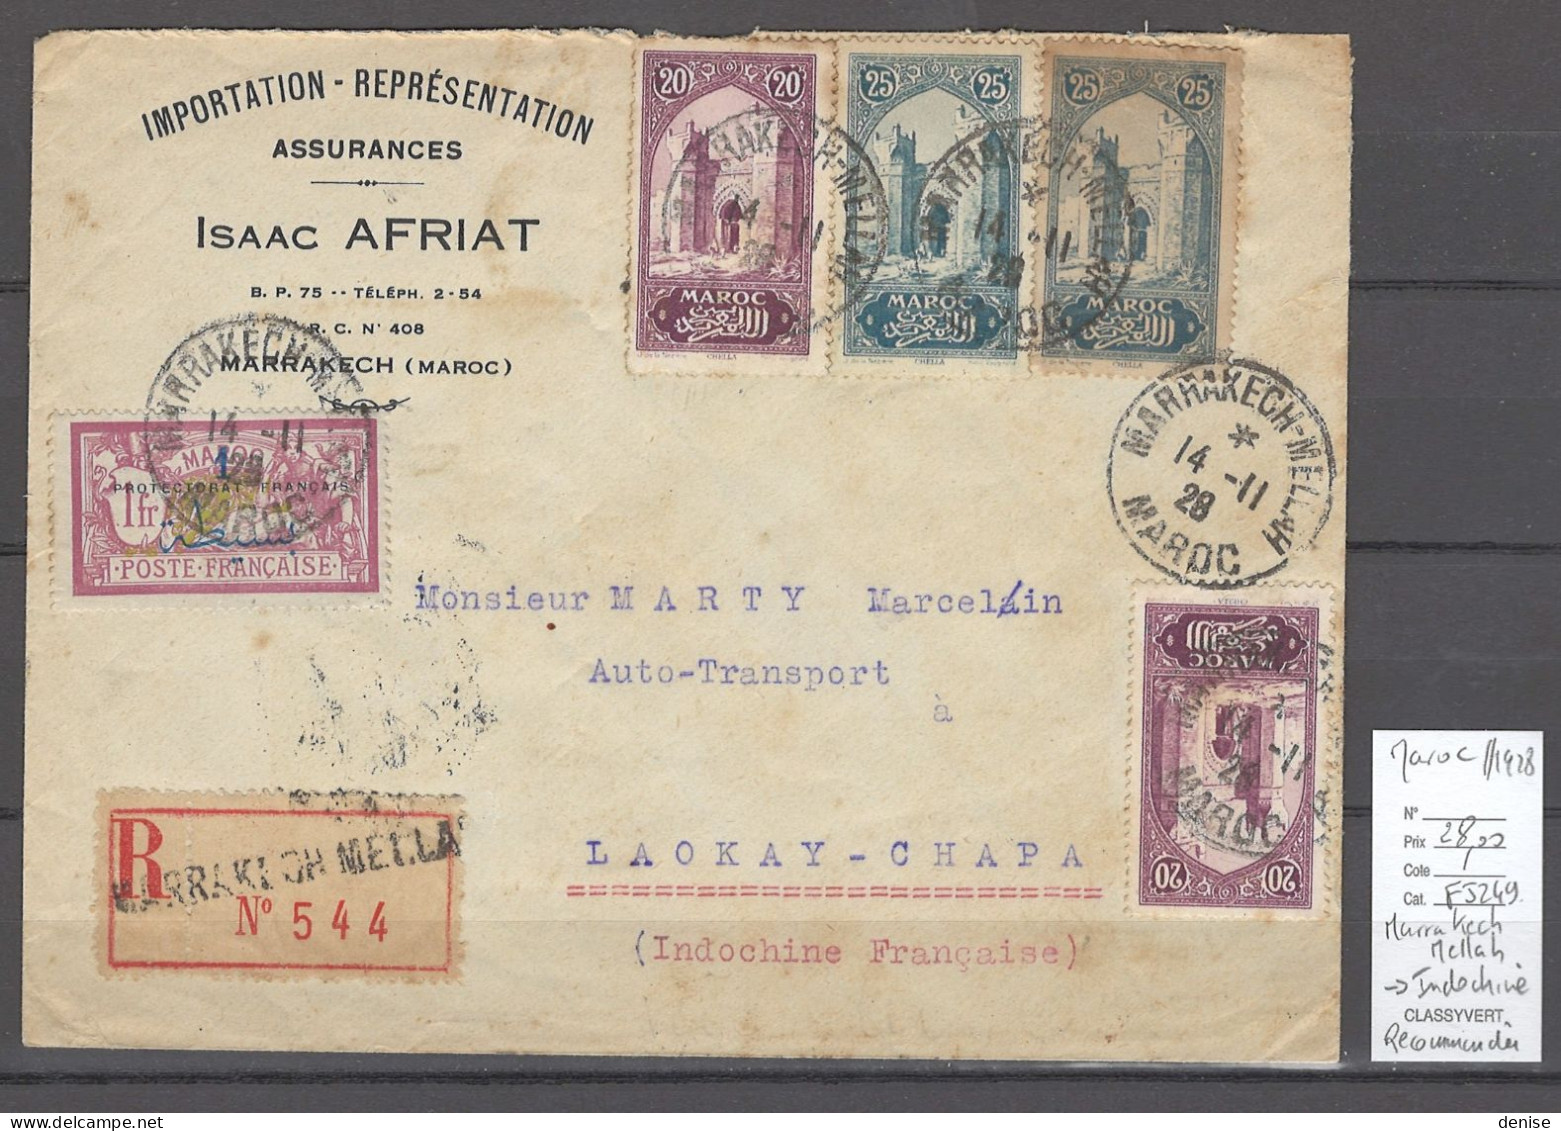 Maroc - Bureau De Marrakech Mellah - 1928 Recommandée Pour L'Indochine - Poste Aérienne